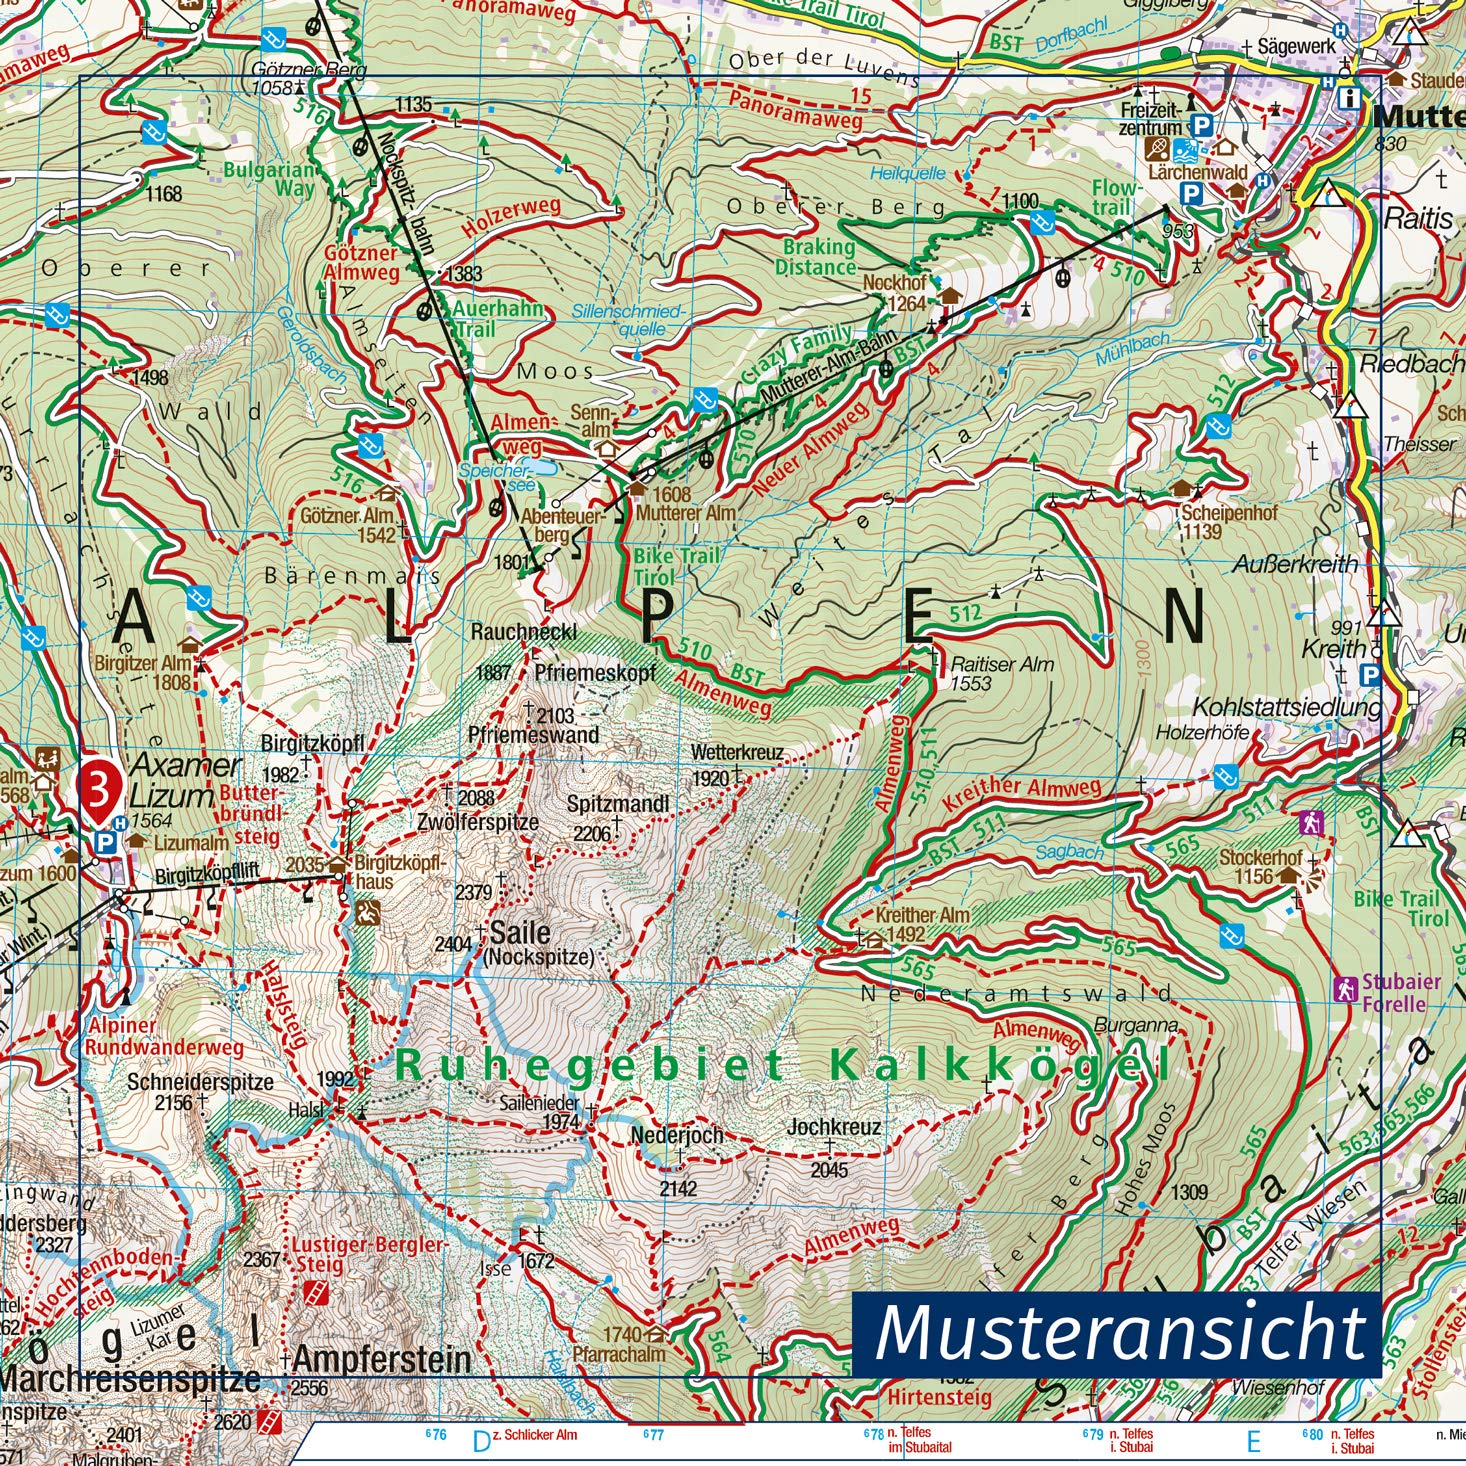 06 Walchensee, Kochelsee, Sylvenstein Stausee 1:25.000 - Kompass Wanderkarte